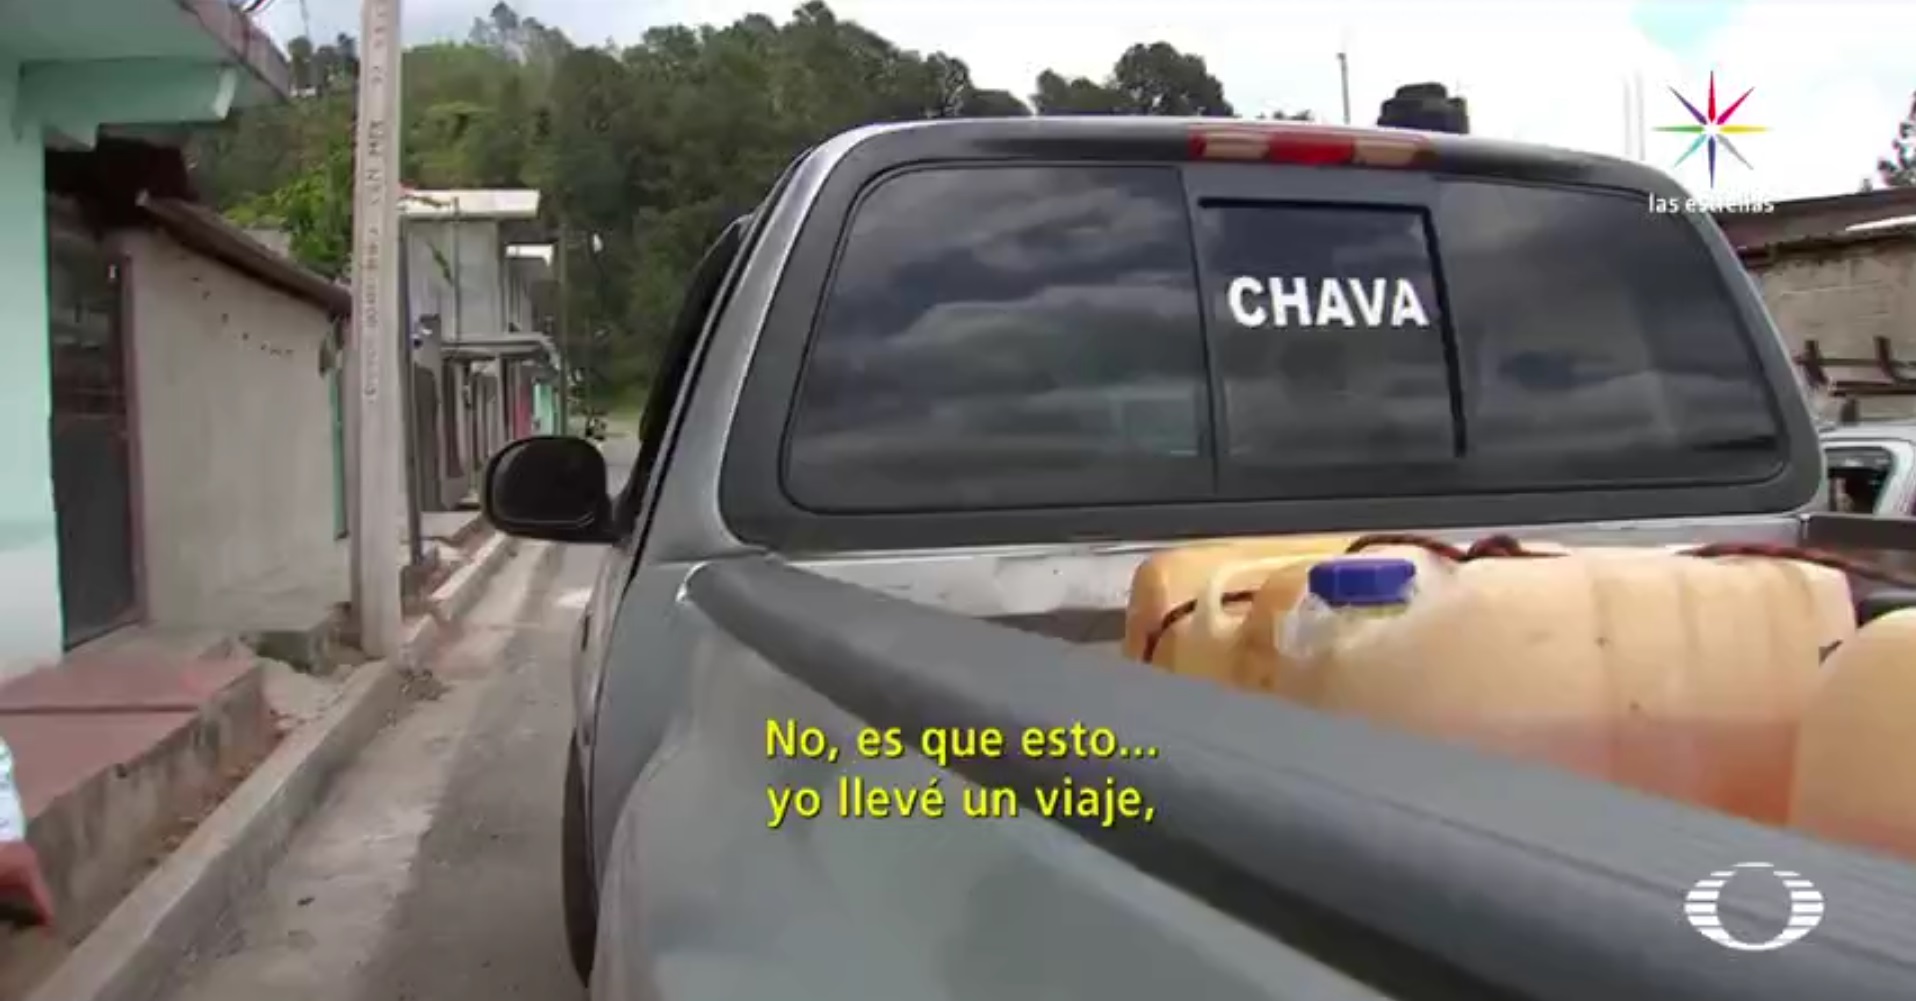 La camioneta estaba cargada con cinco bidones, de 50 litros cada uno, y tres, de 20 litros de gasolina robada. (Noticieros Televisa)